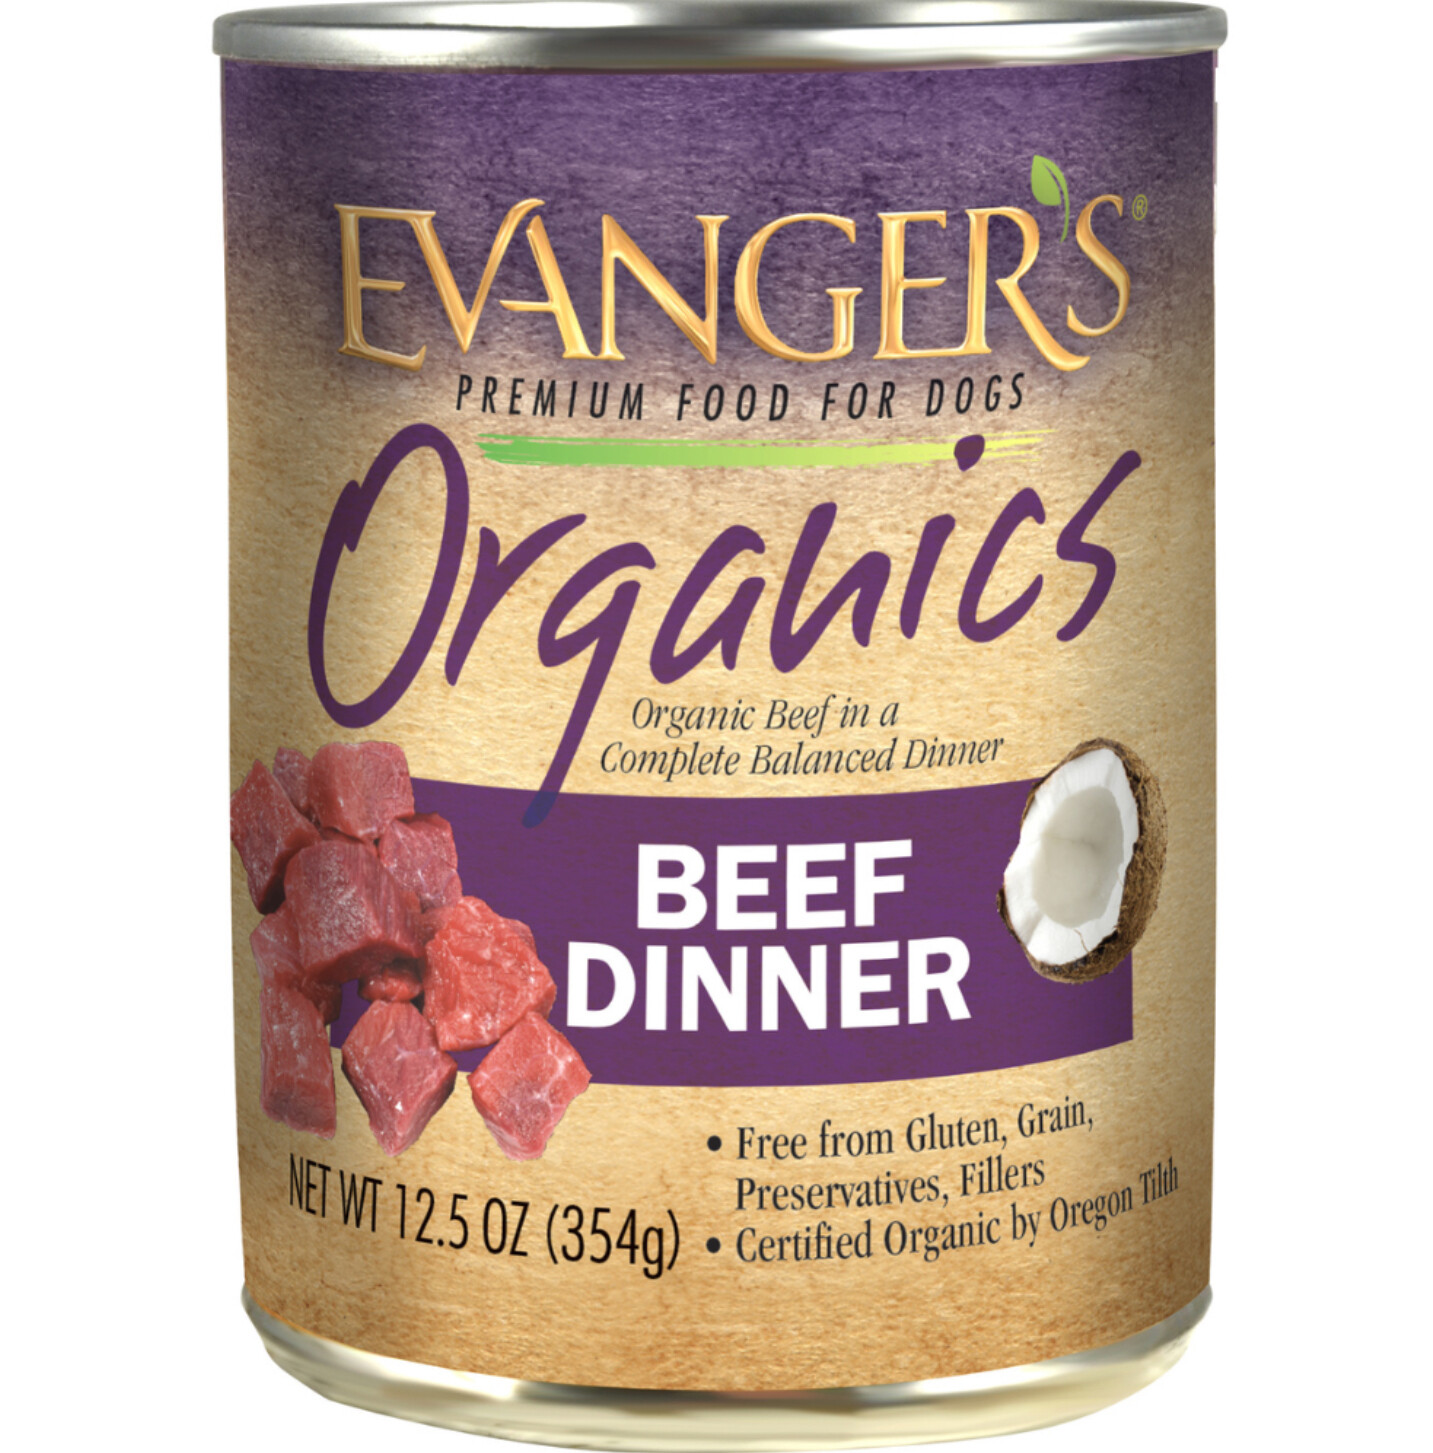 Organics Beef Dinner - Evanger's